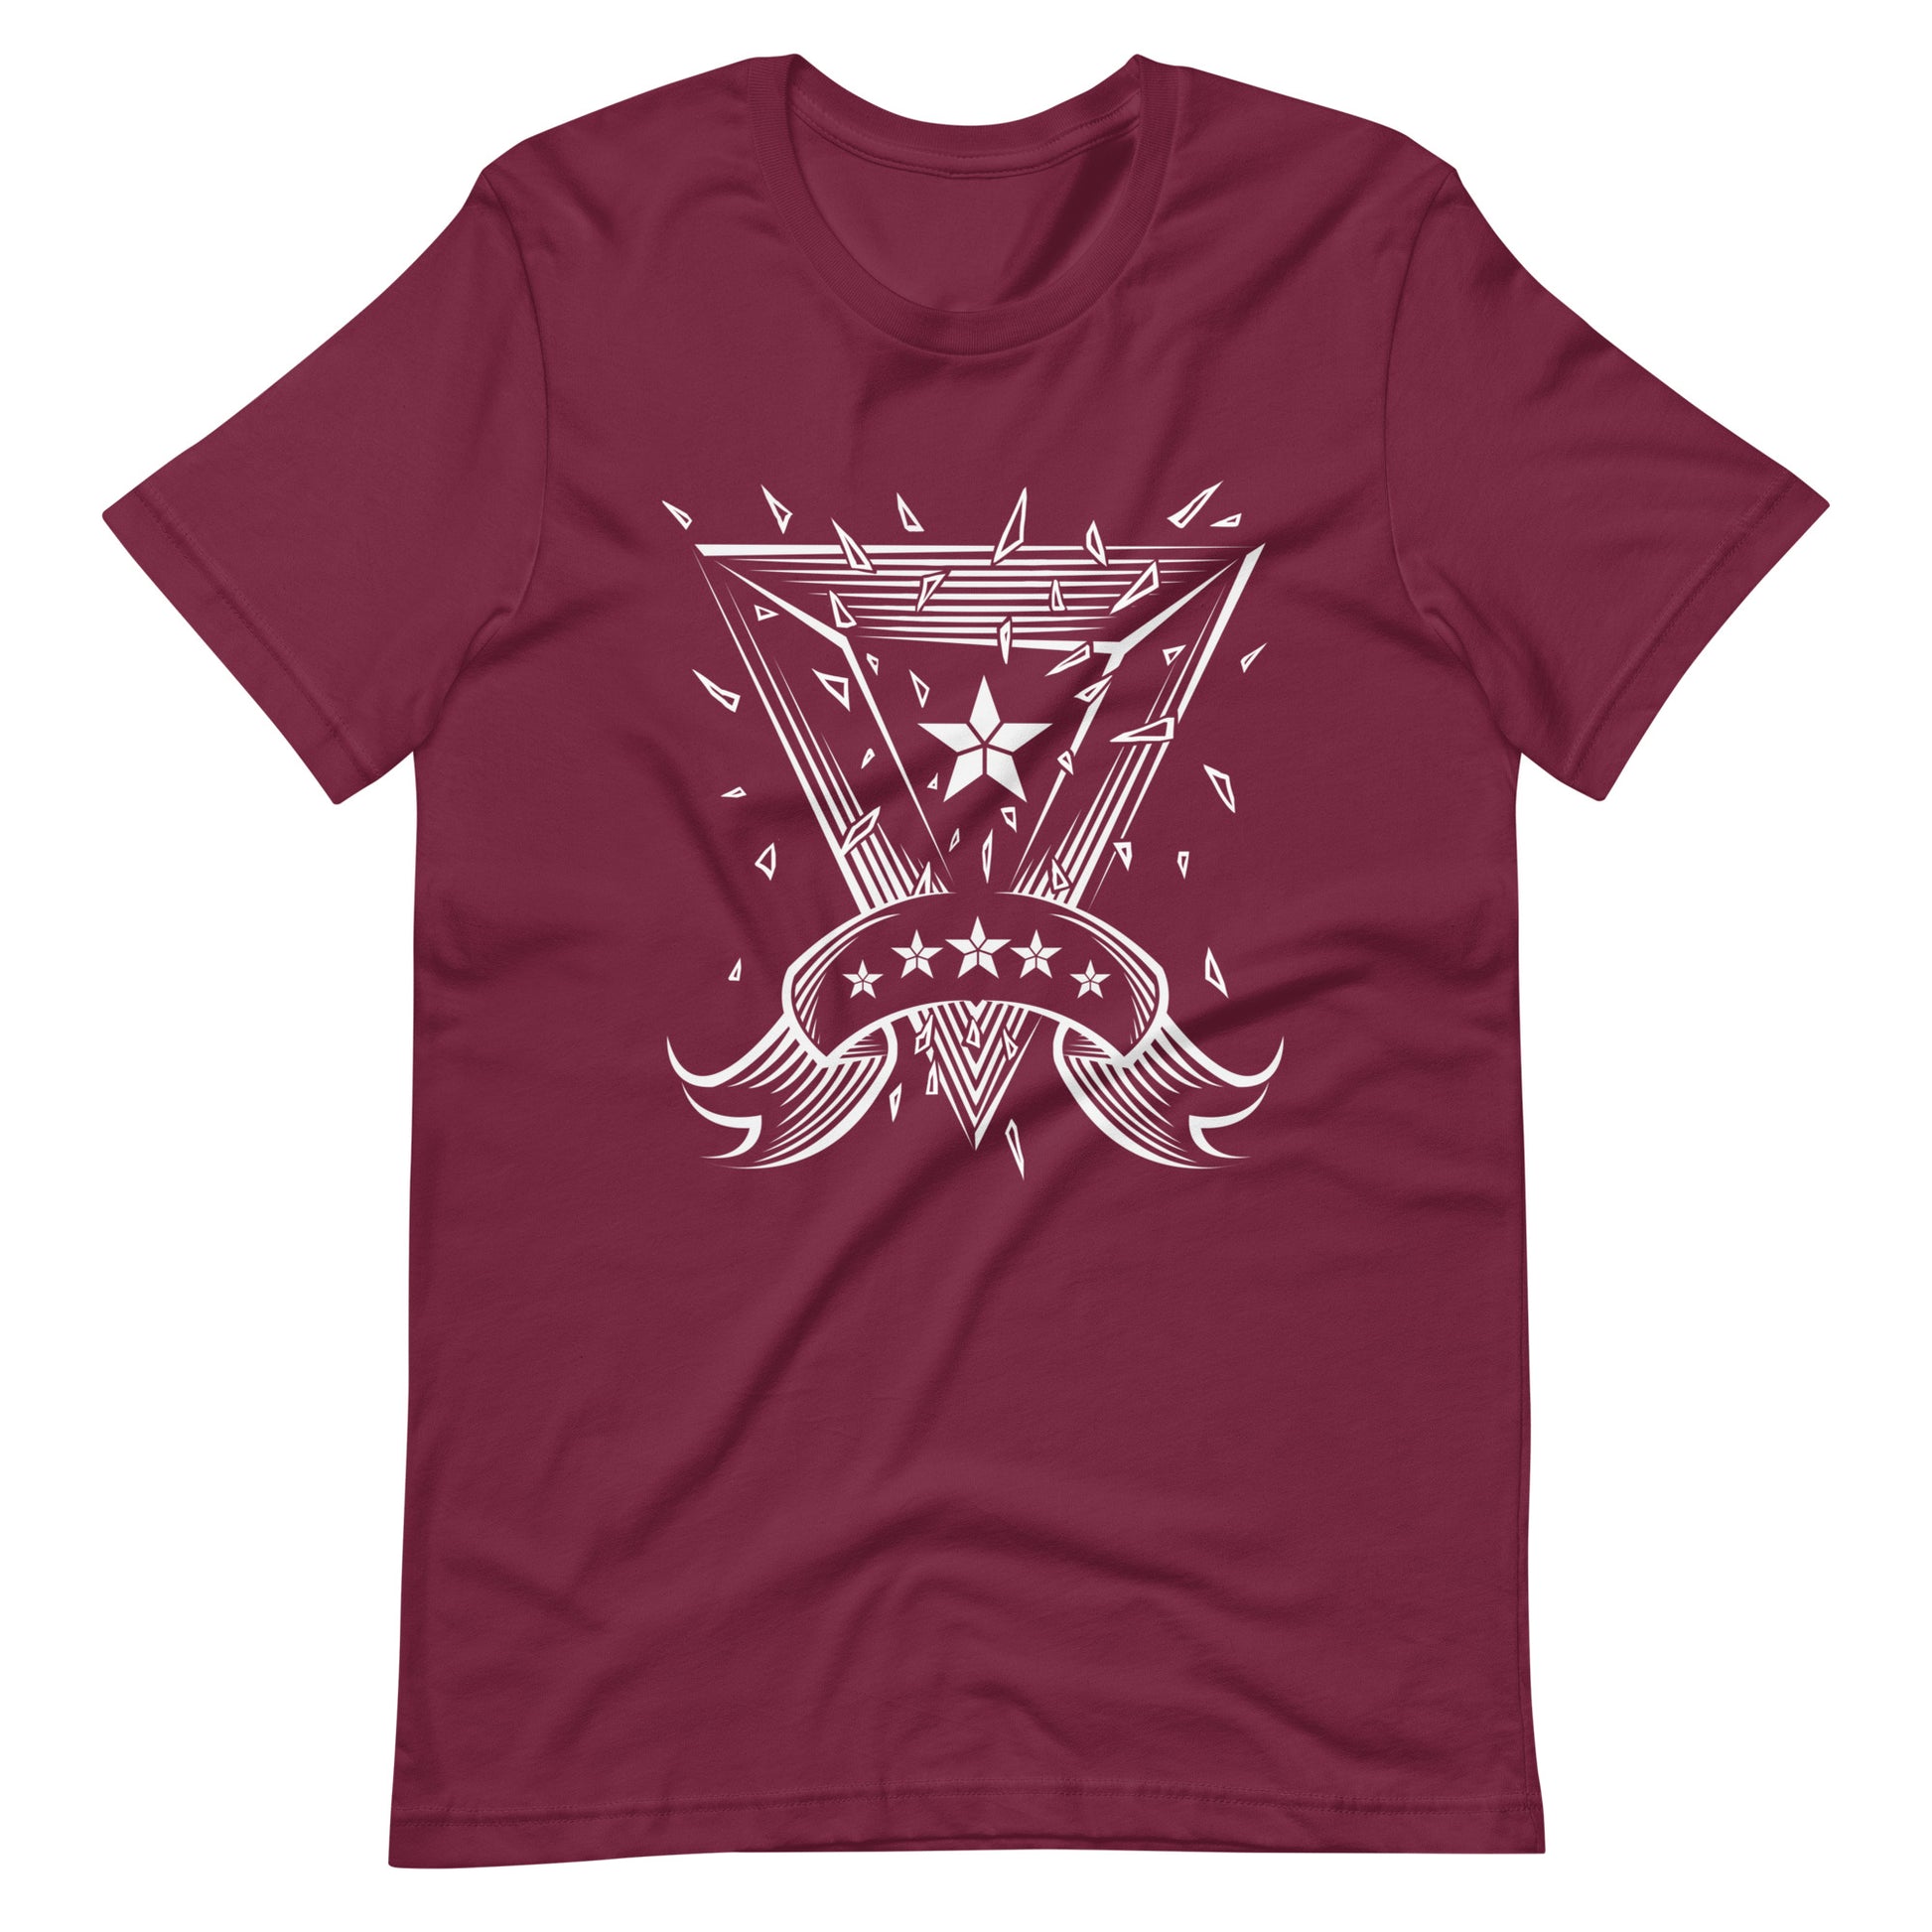 Starlight - Men's t-shirt - Maroon Front